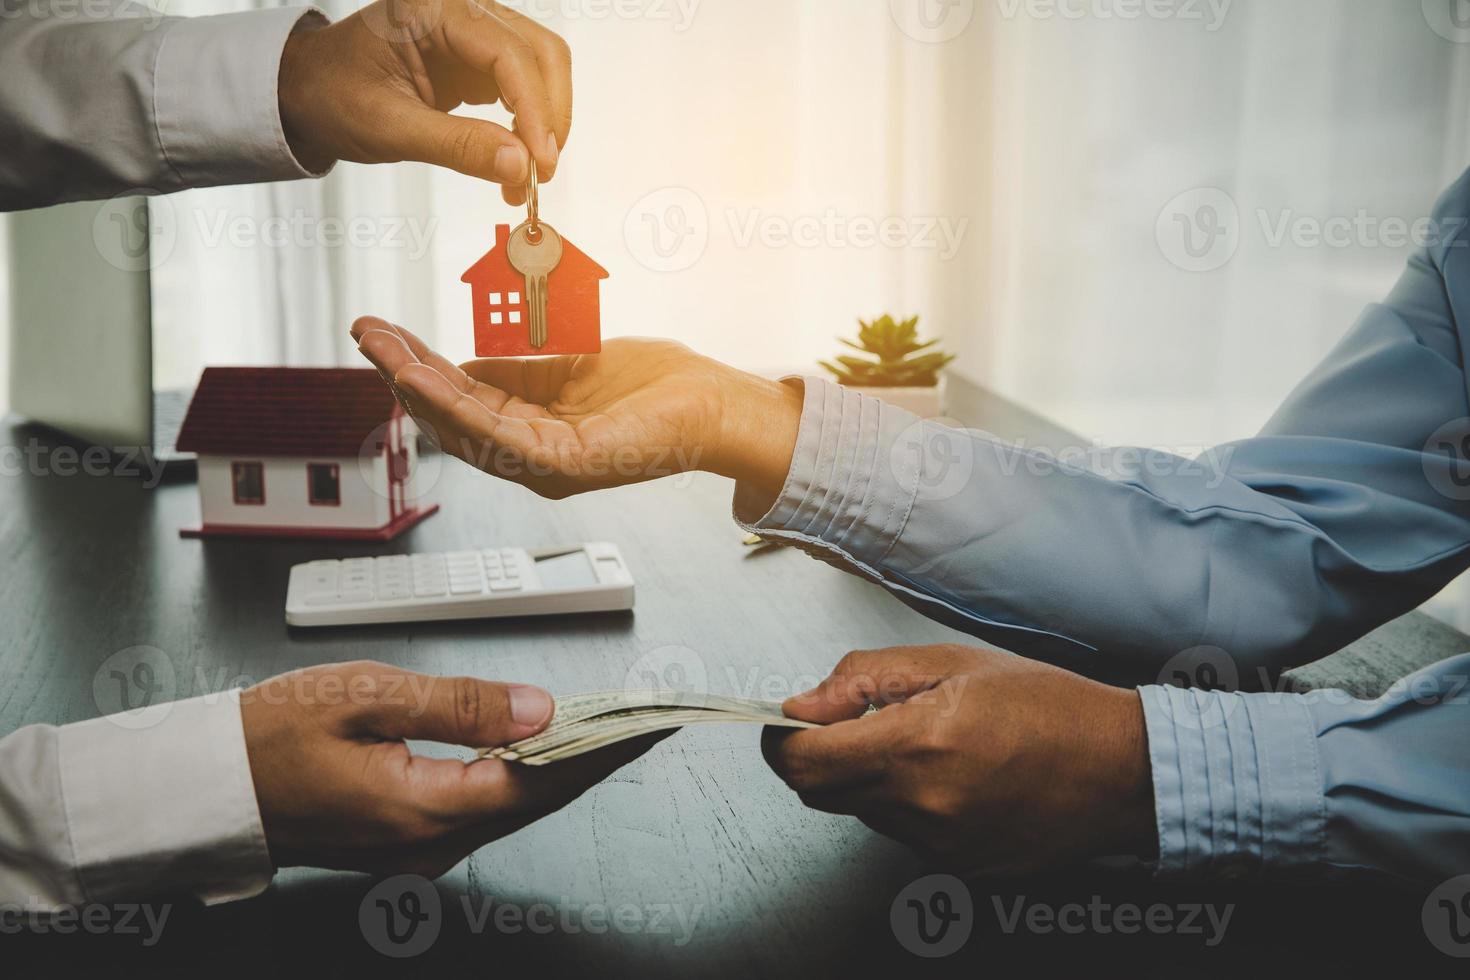 agente immobiliare che tiene la chiave di casa al suo cliente dopo aver firmato il contratto, il concetto di prestito aziendale, mutuo di investimento, immobiliare, trasloco o affitto di proprietà. foto